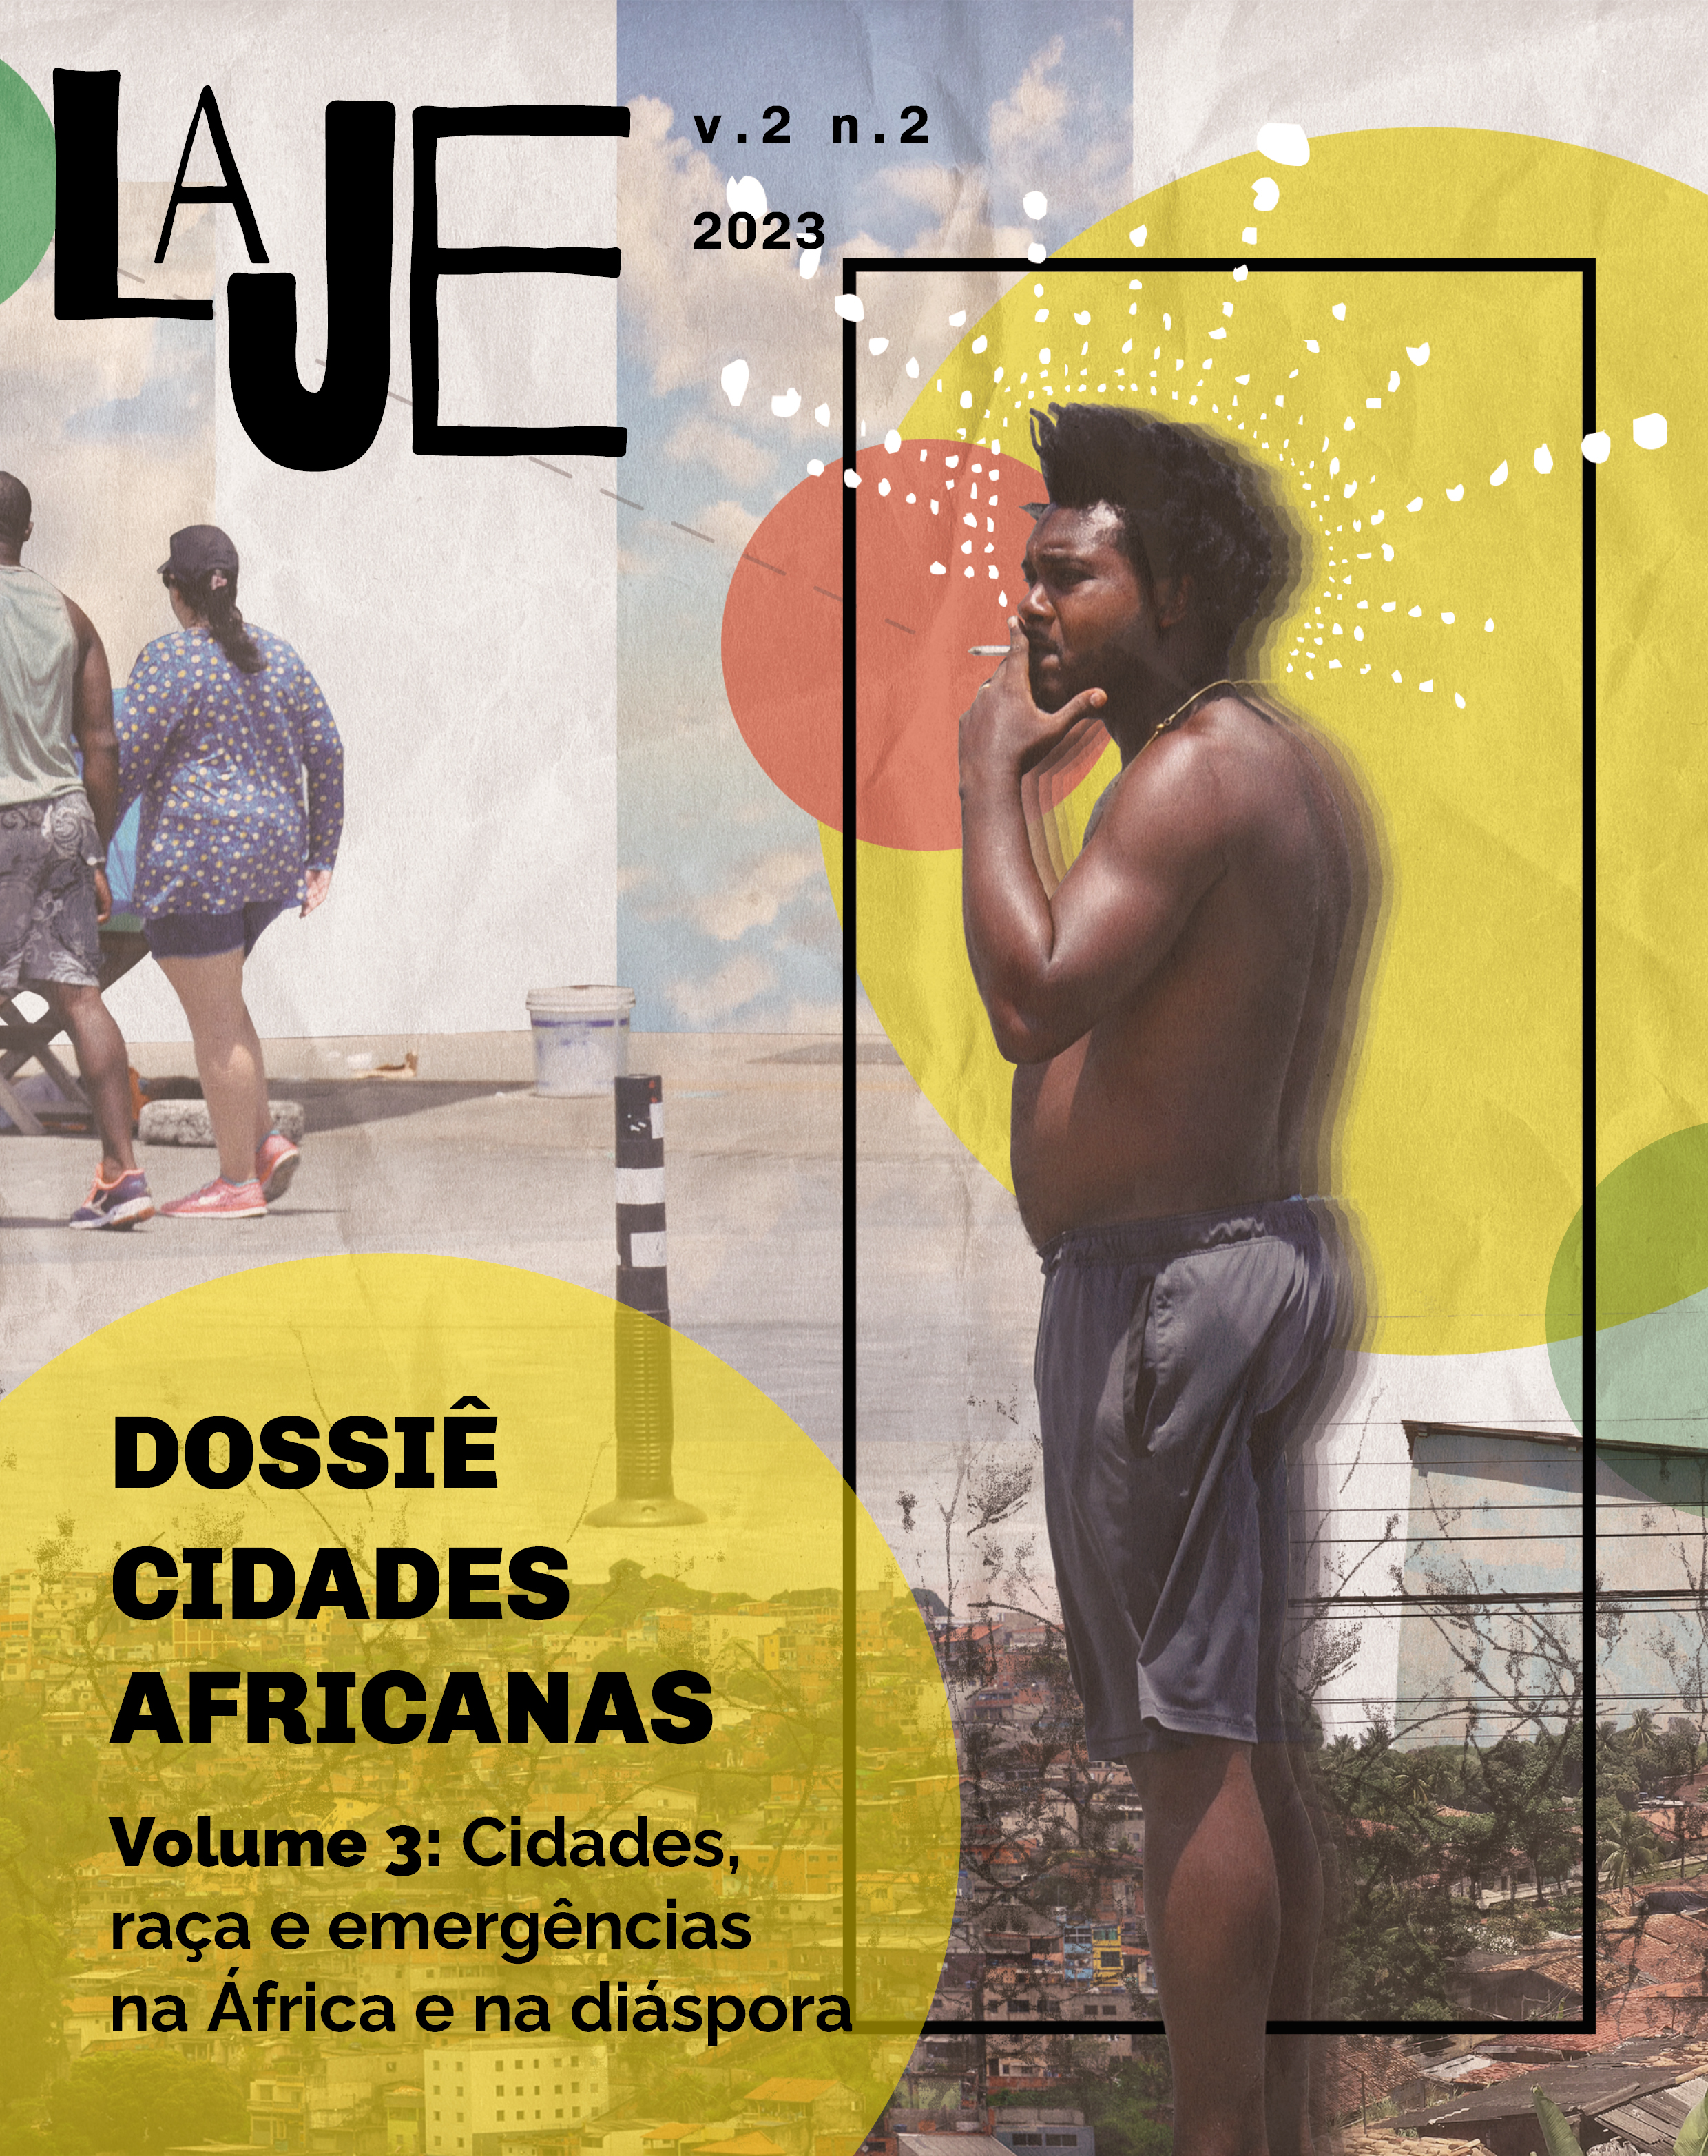 Para todos verem: capa da revista, com um homem negro fumando um cigarro, junto ao logo da revista Laje e as informações do volume 3 do dossiê.